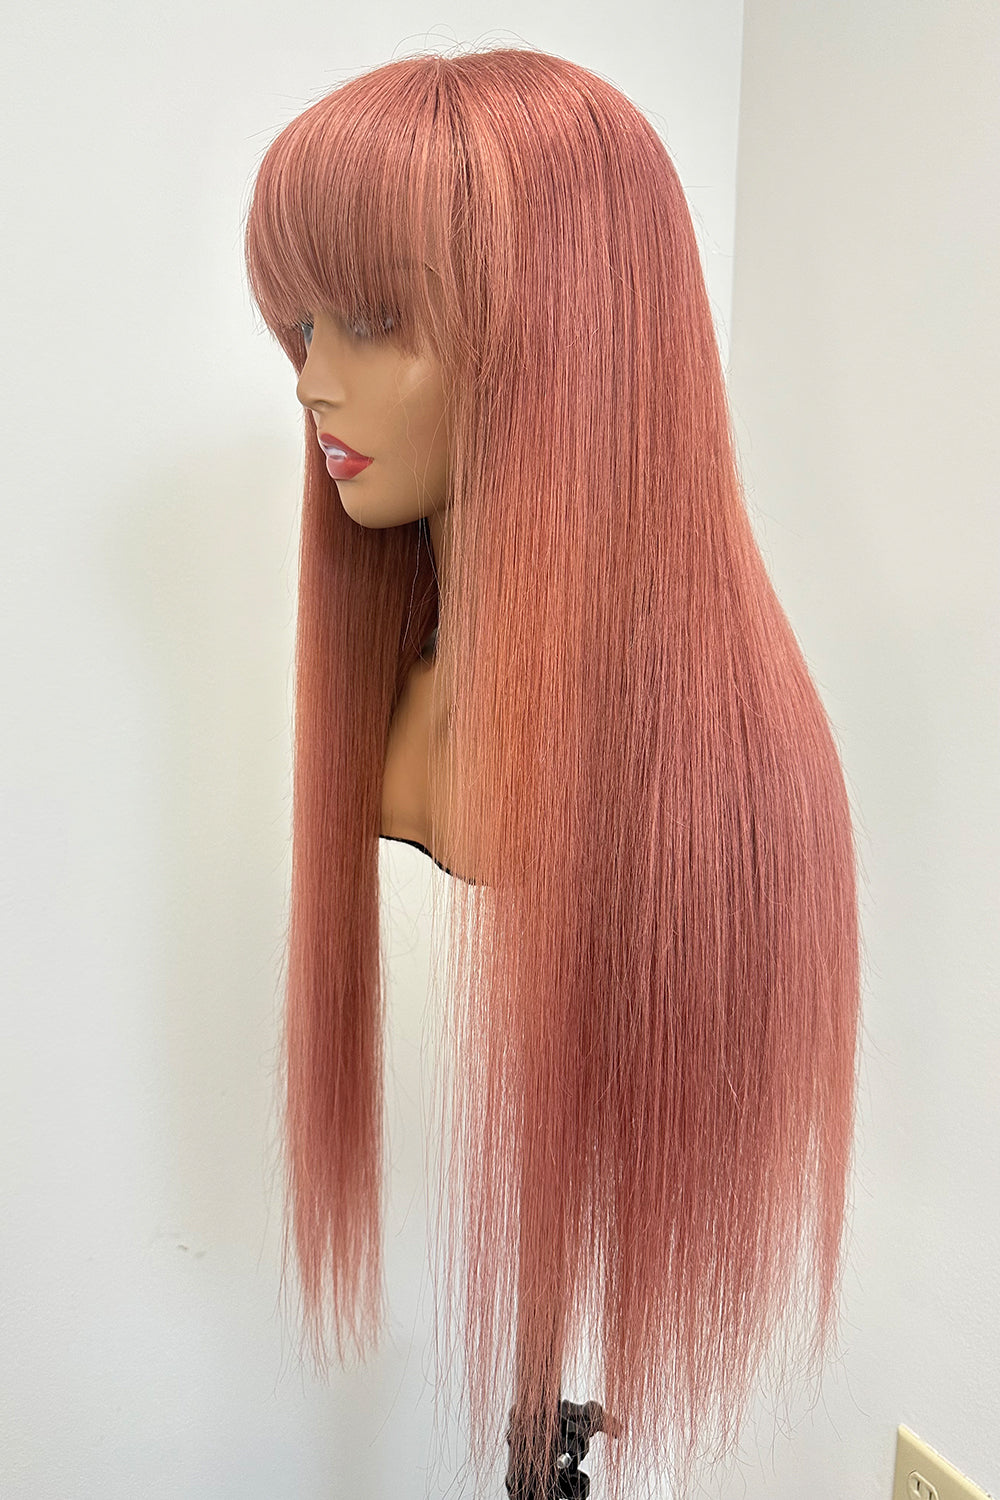 Pelucas de diseñador: peluca recta larga y sedosa de color rosa claro con flequillo amigable